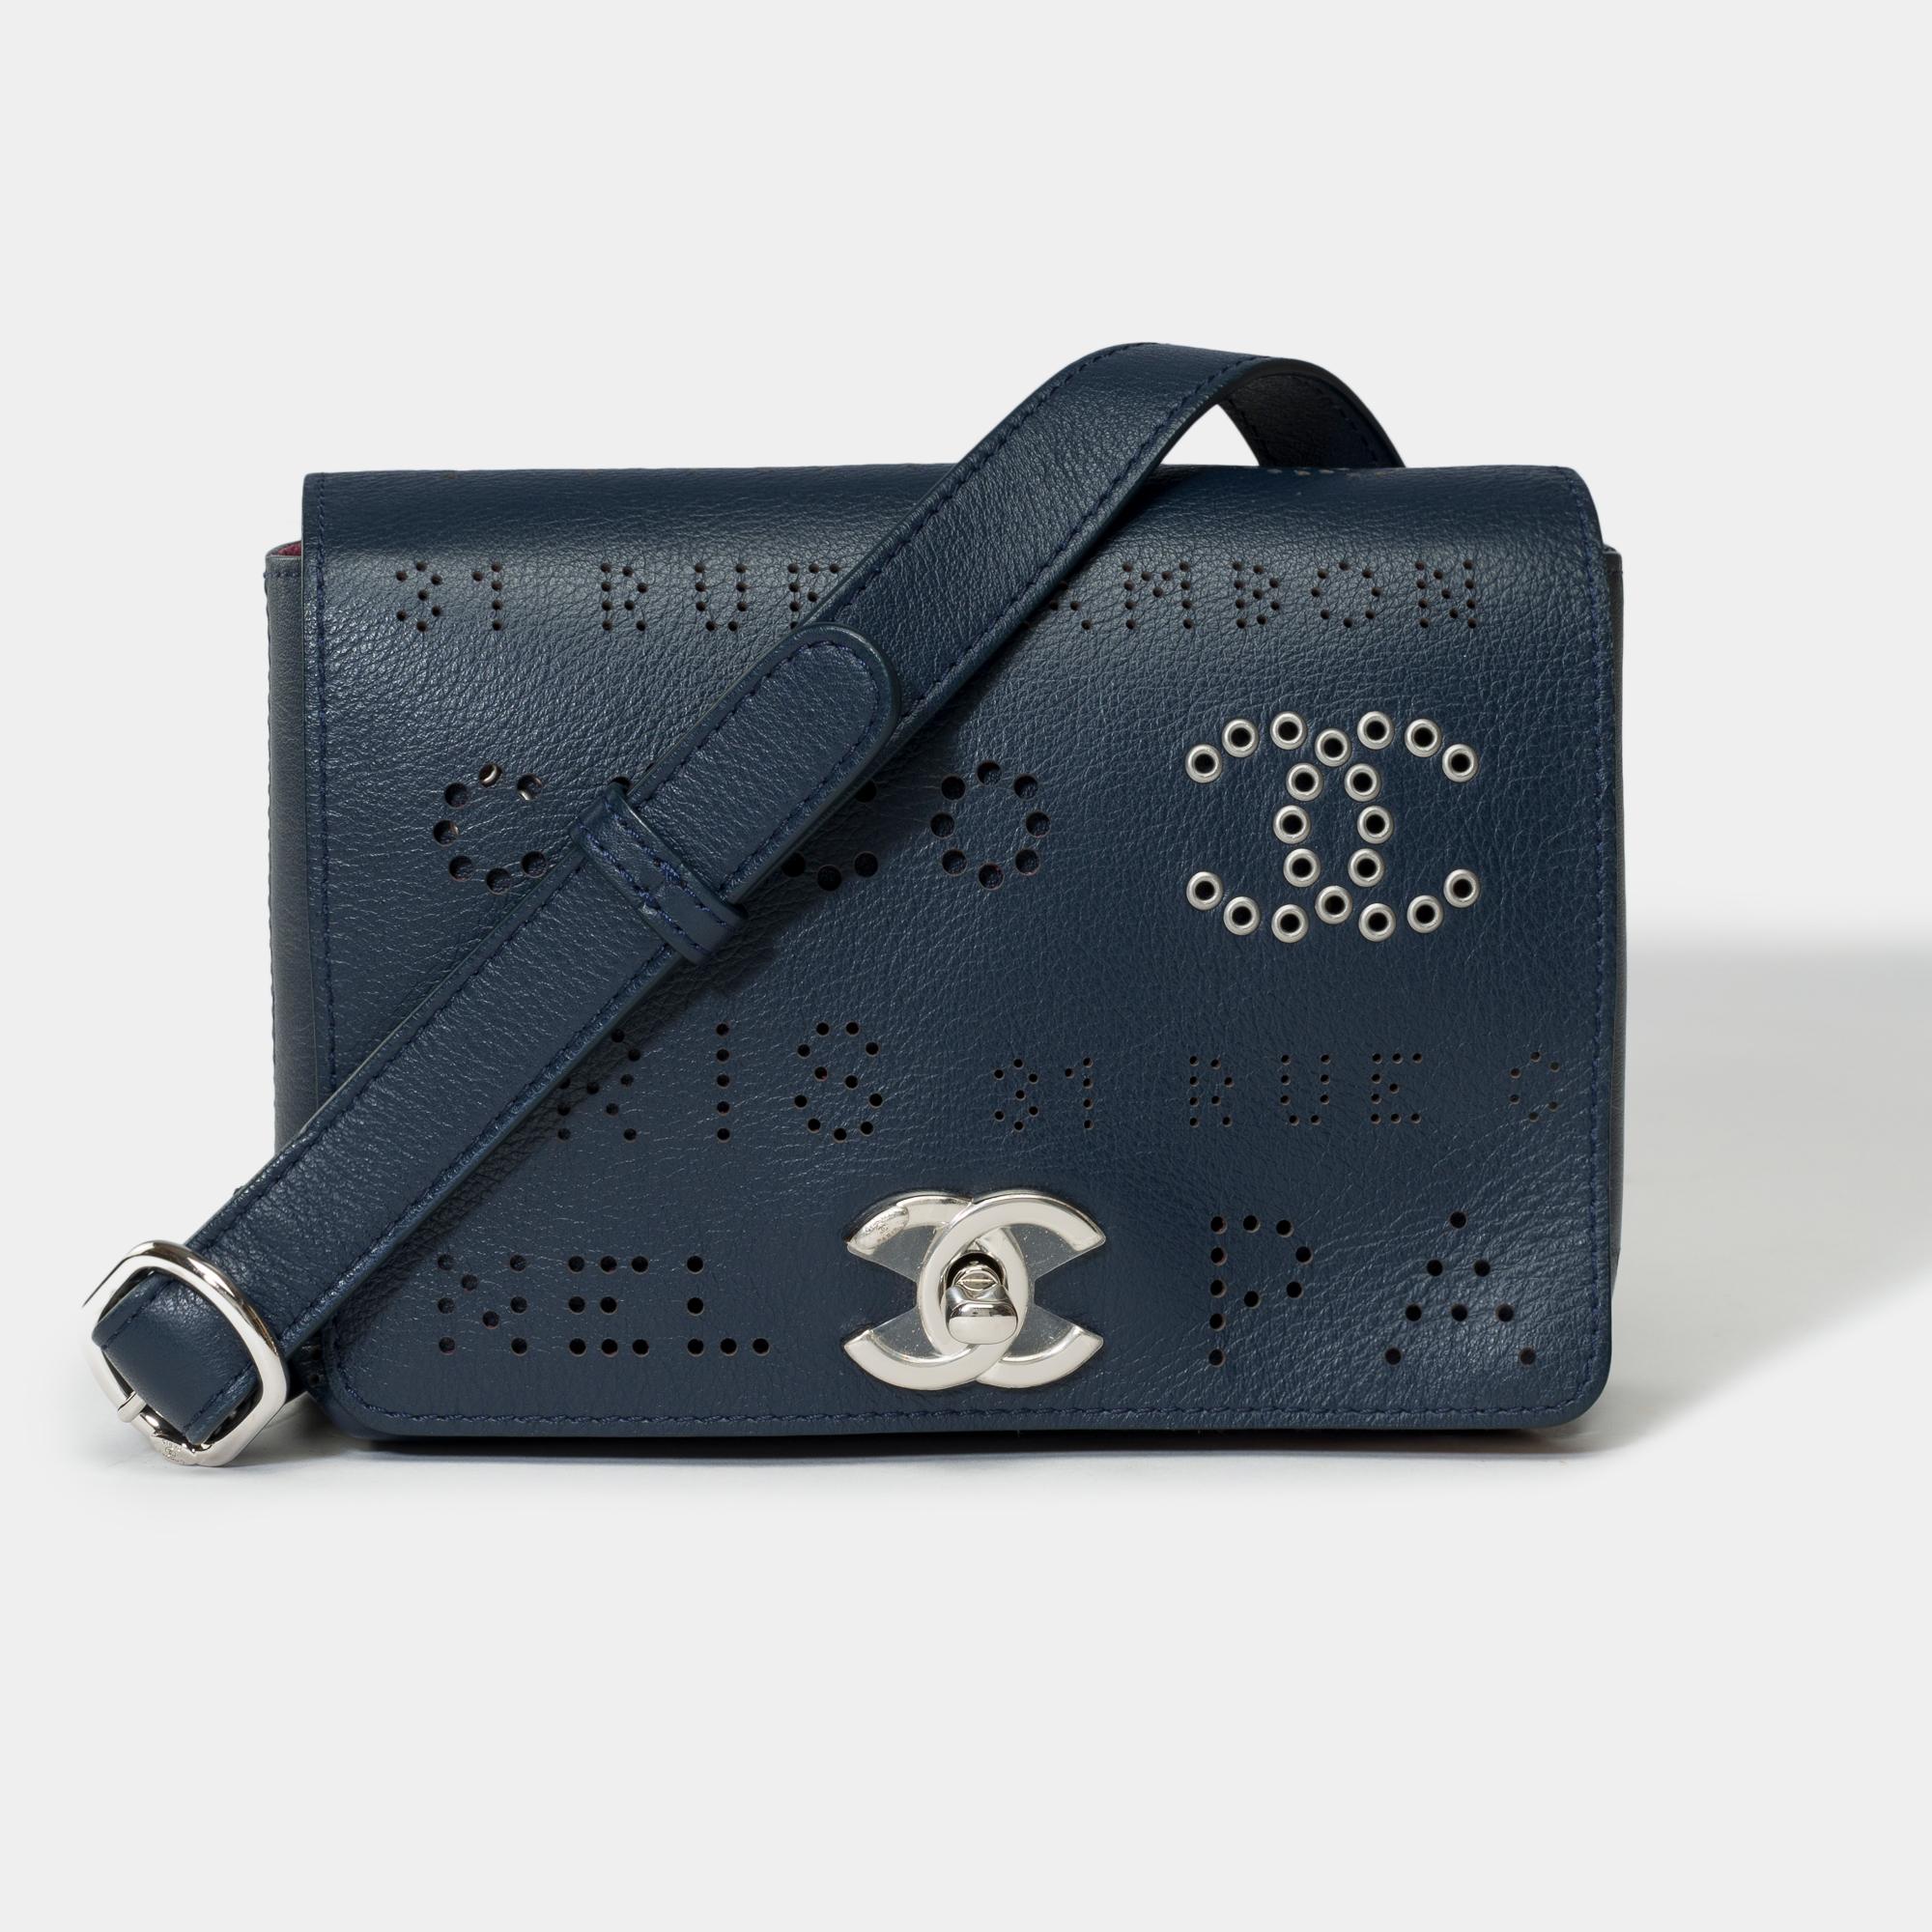 Wunderschöne Chanel Classic Umhängetasche mit Überschlag und perforiertem Logo aus marineblauem Leder, silberner Metallverzierung, einem verstellbaren Kettengriff aus silbernem Metall und marineblauem Leder für die Hand oder die